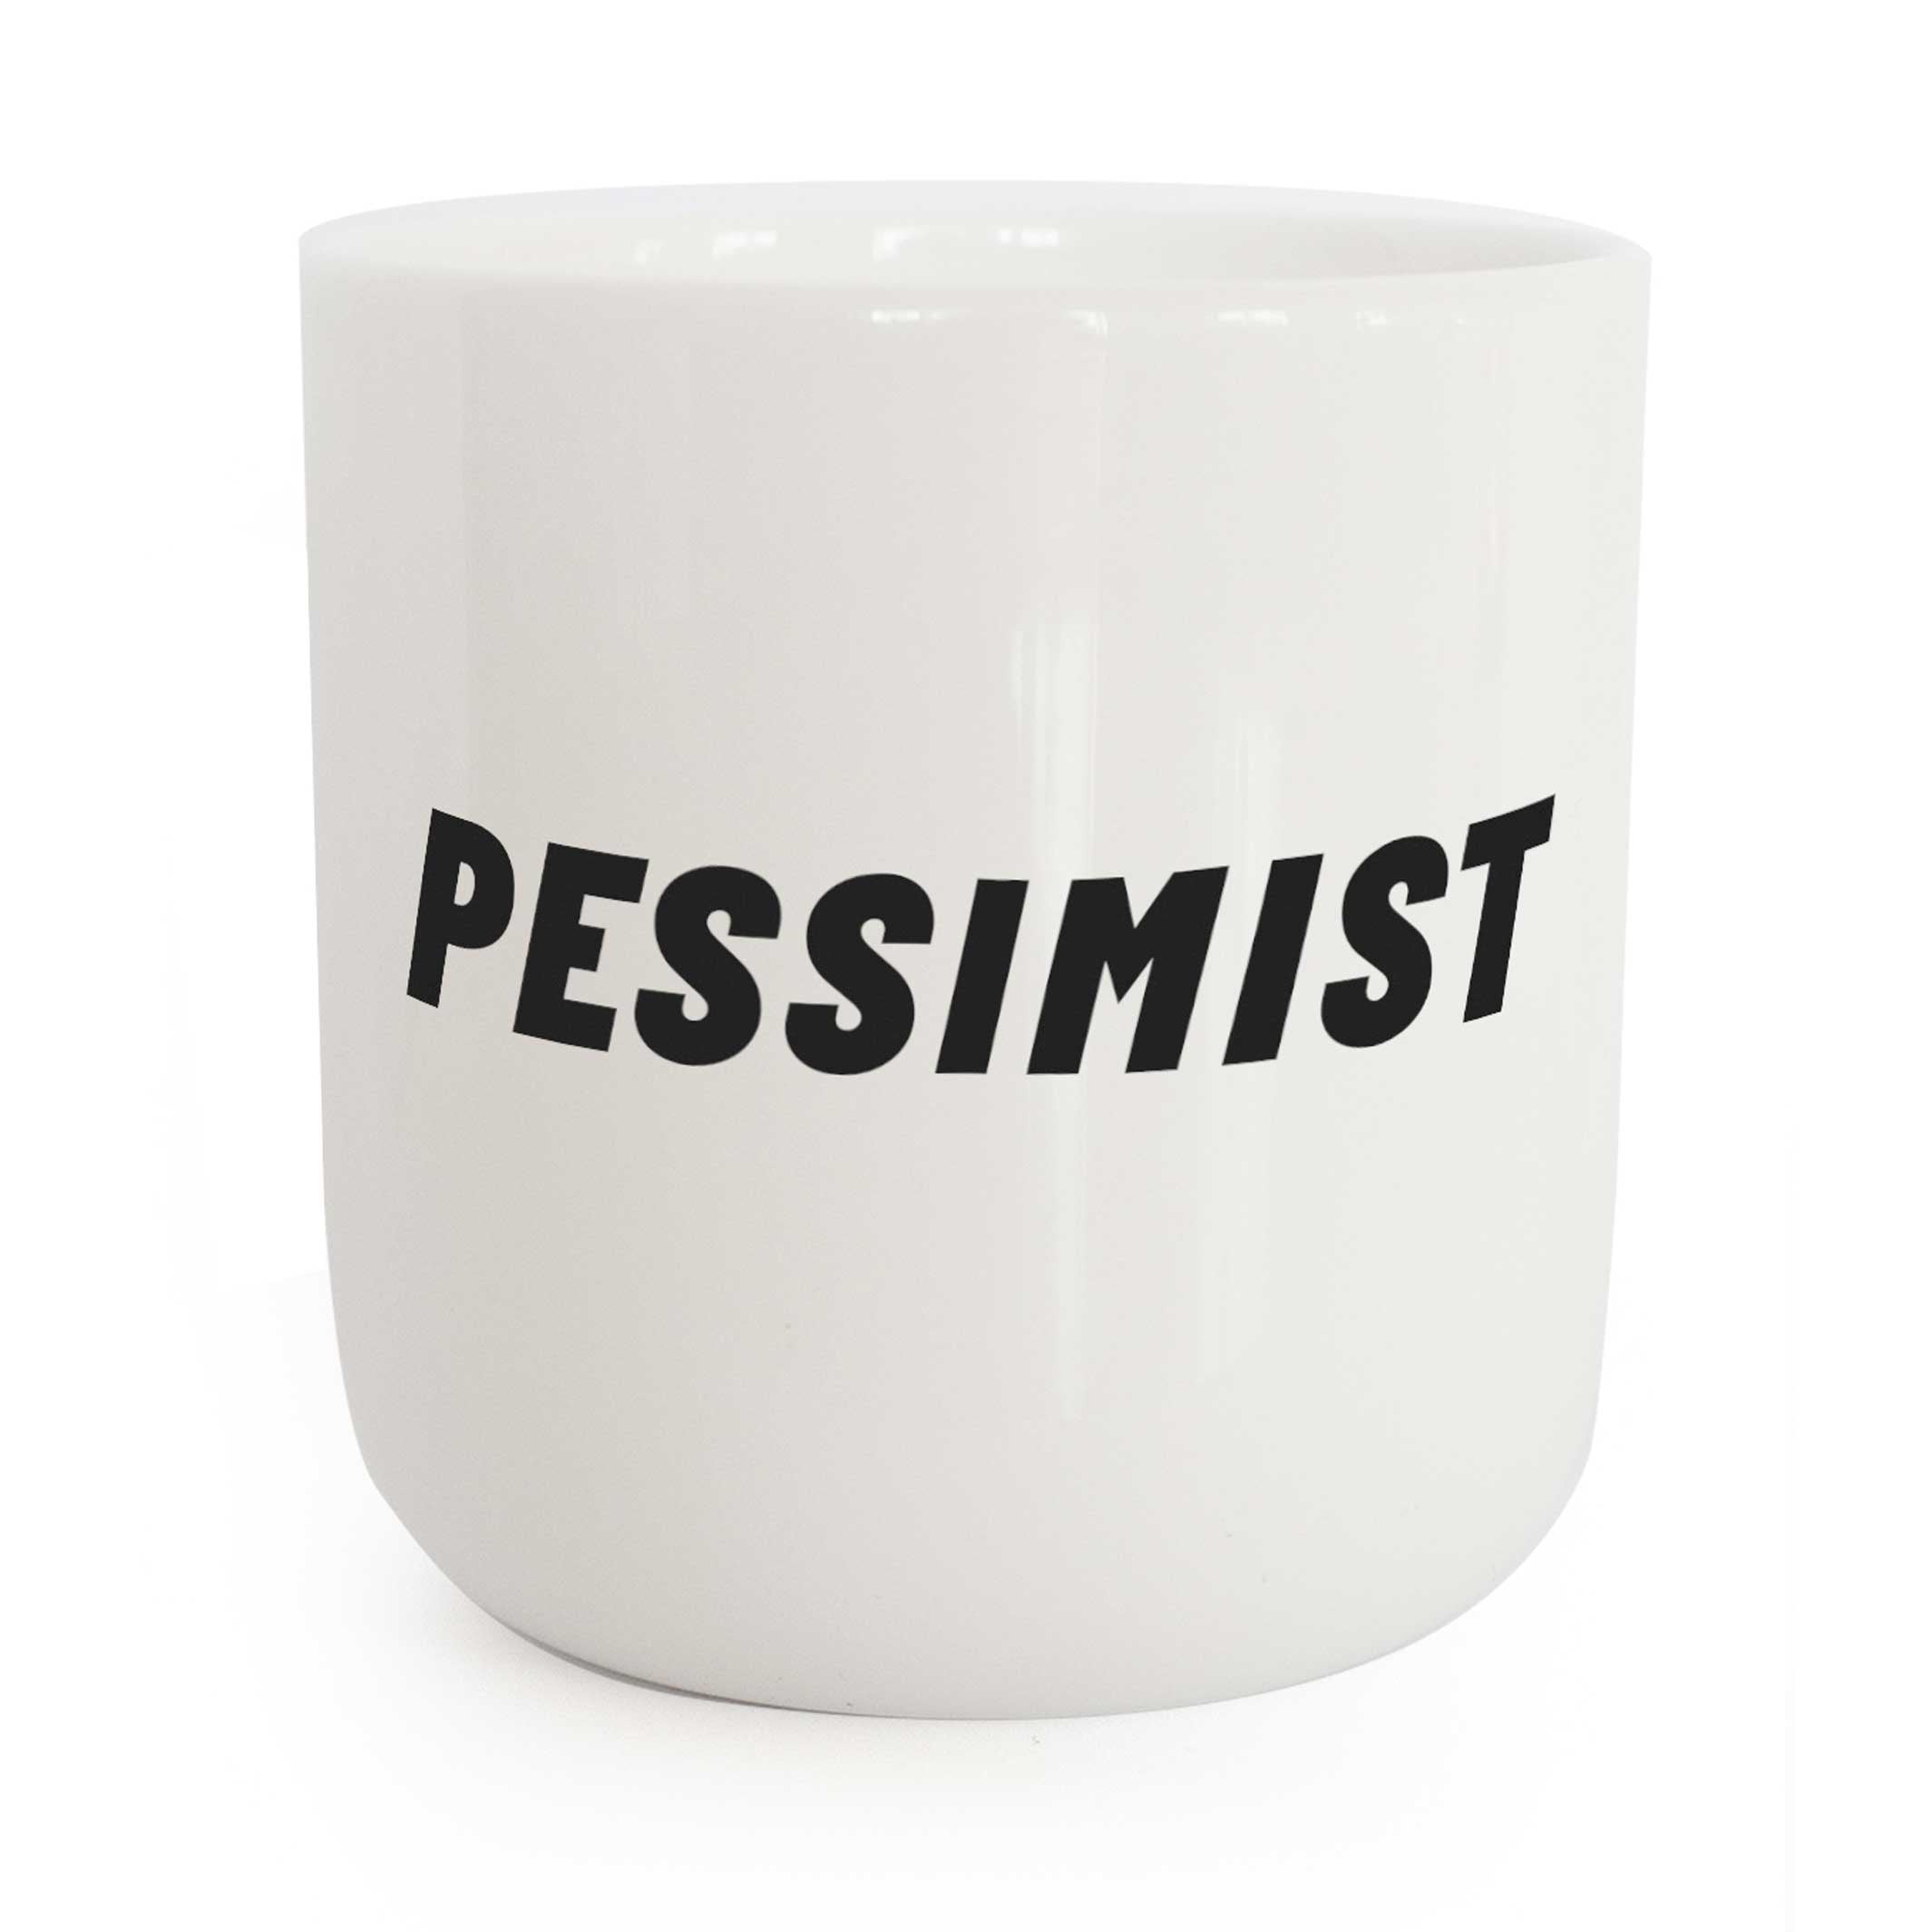 PESSIMIST | weisser Kaffee- & Tee-BECHER mit schwarzer Typo | Attitude Serie | PLTY